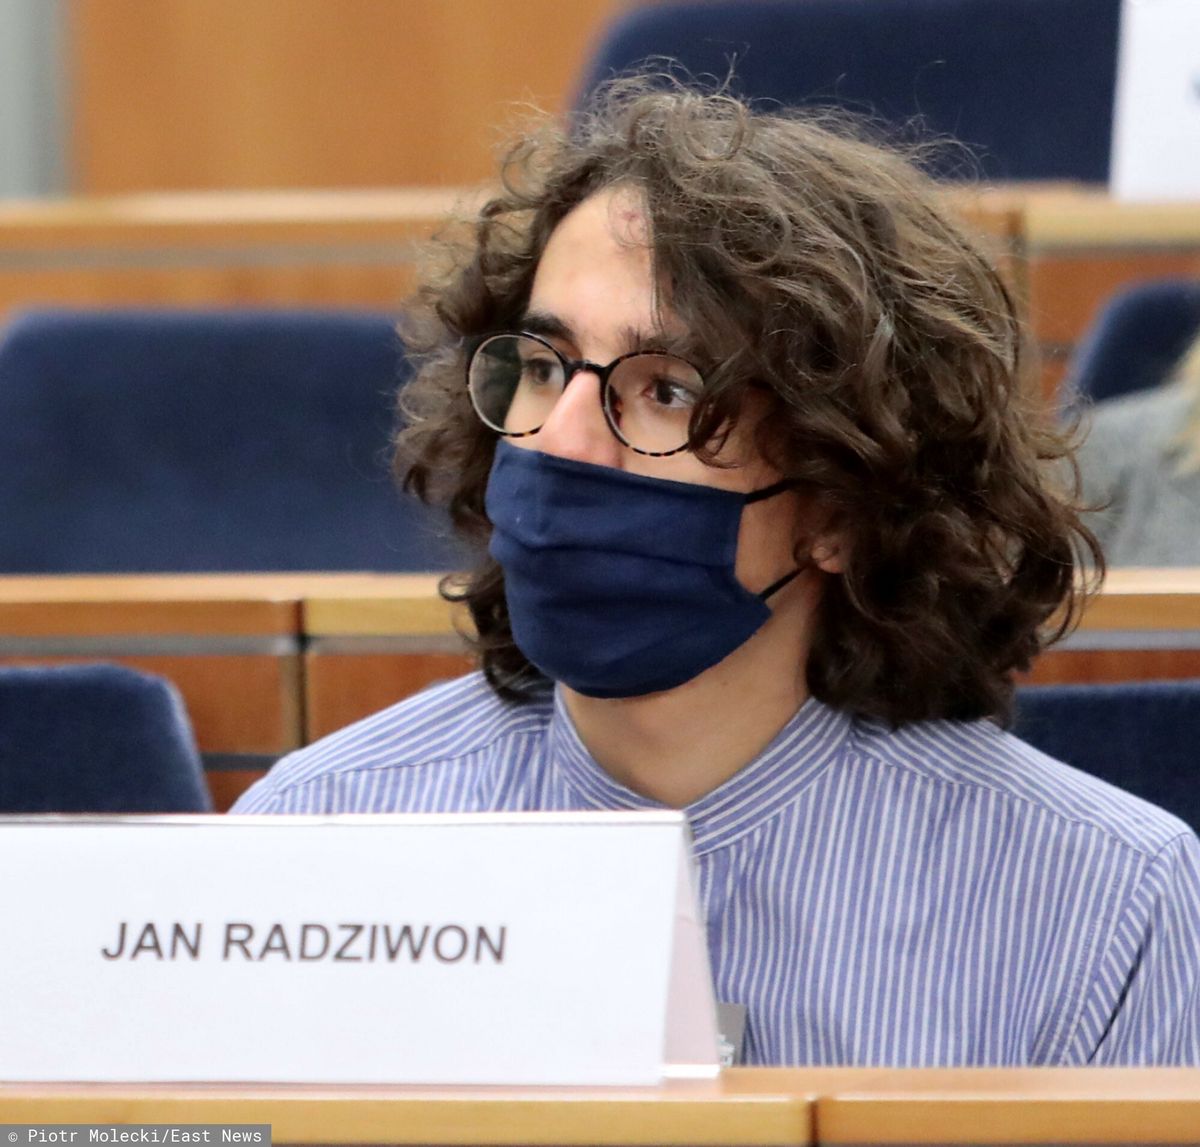 Strajk kobiet. 17-letni Jan Radziwon został zatrzymany podczas protestu przed Sądem Okręgowym